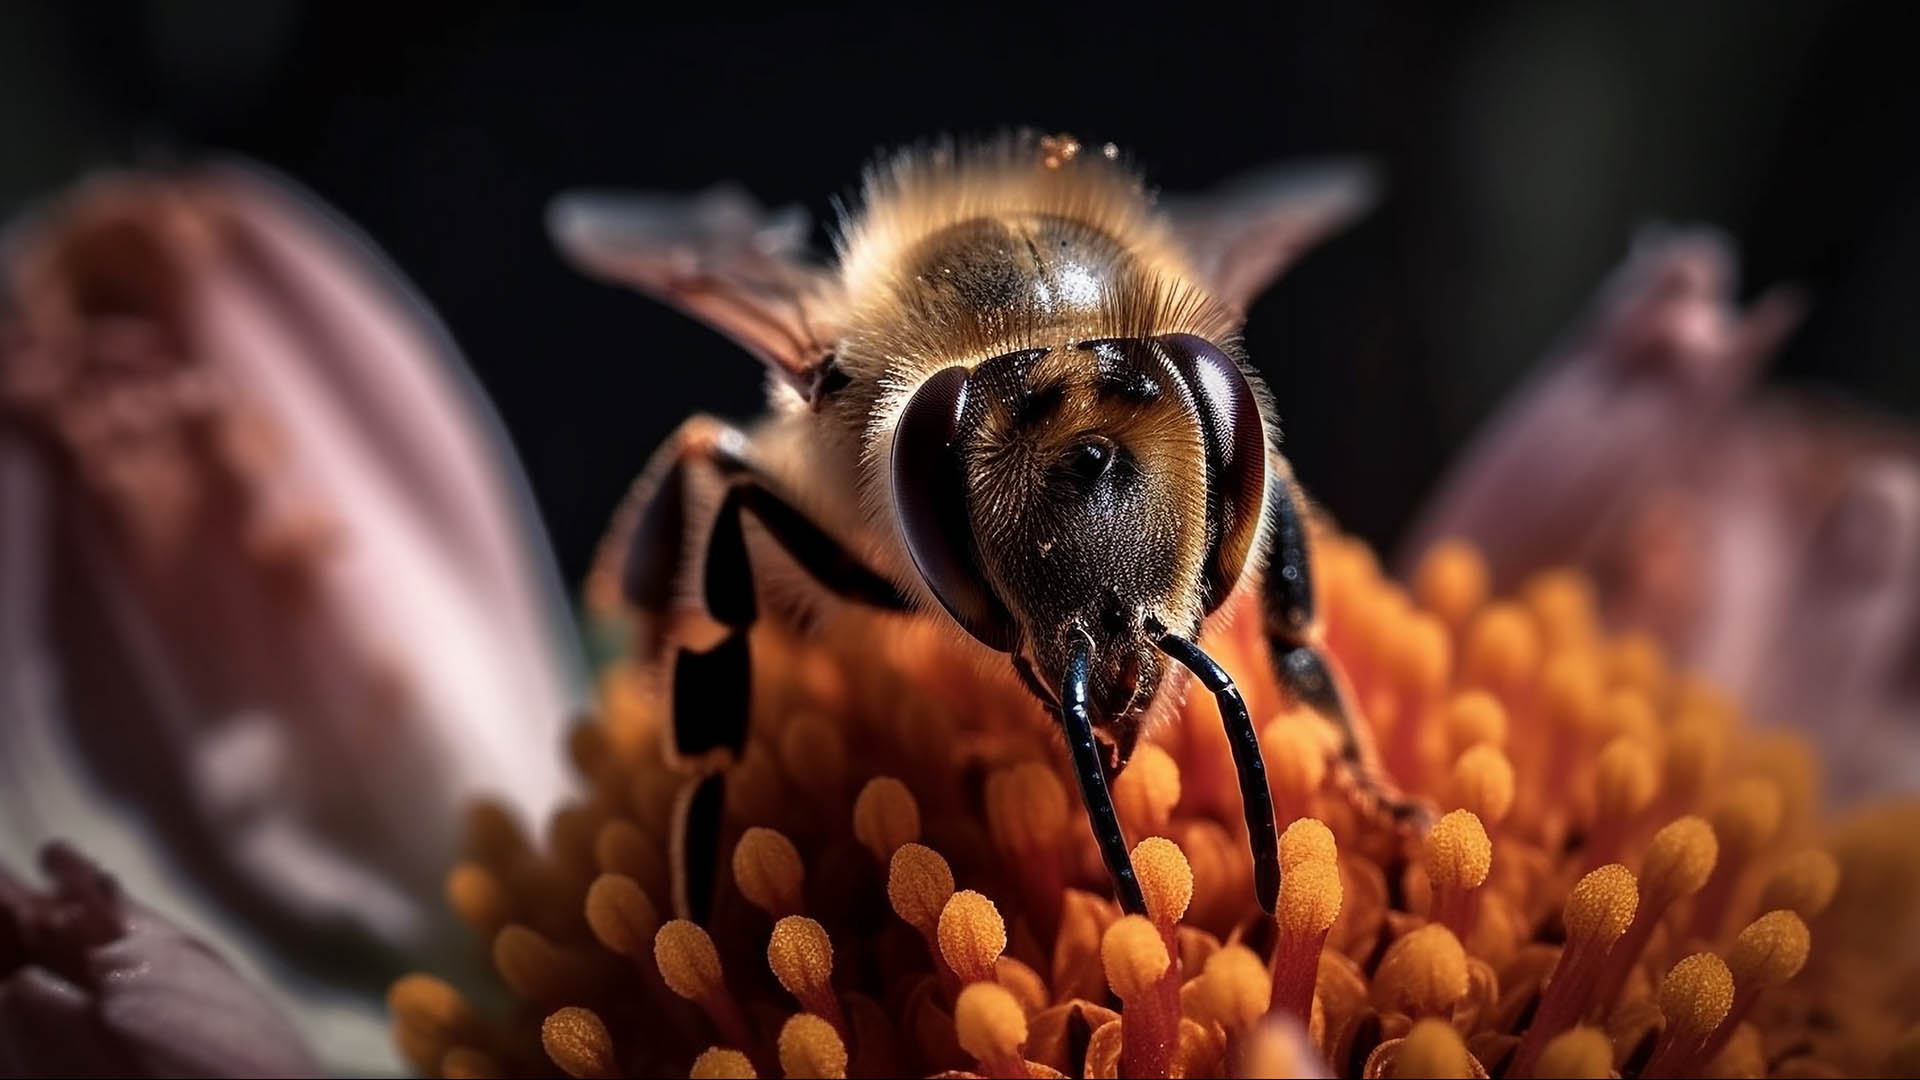 Le api raccolgono il nettare che utilizzeranno per produrre il miele, e cos facendo impollinano i fiori